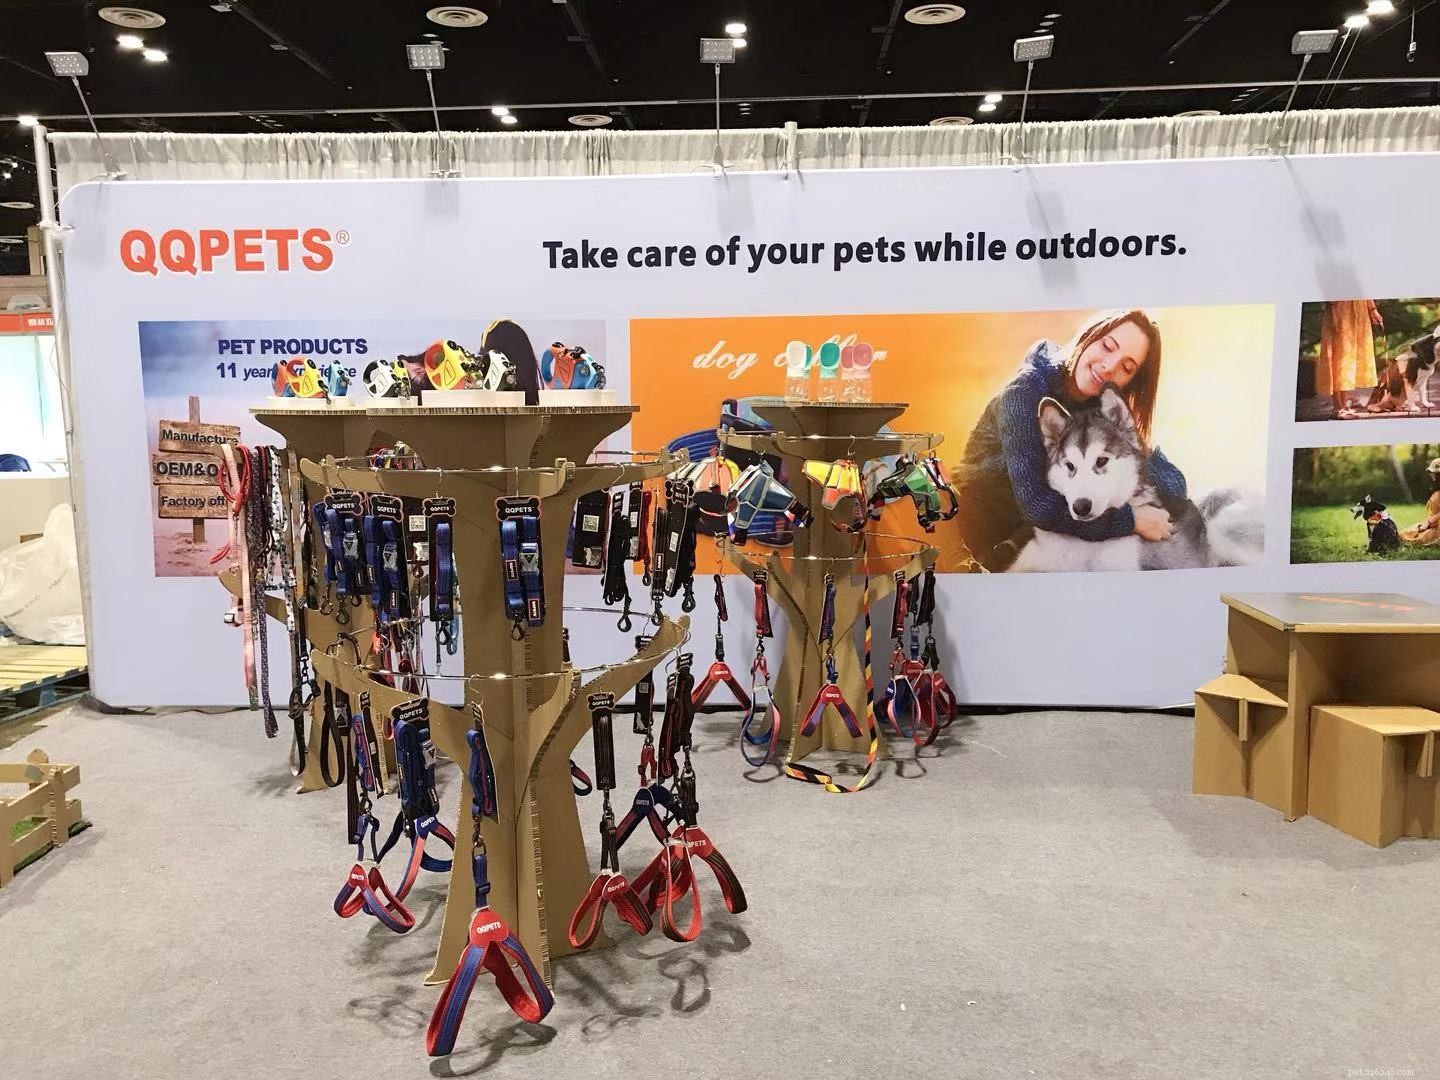 QQPETS está esperando por você na Orlando GLOBAL PET EXPO 2019